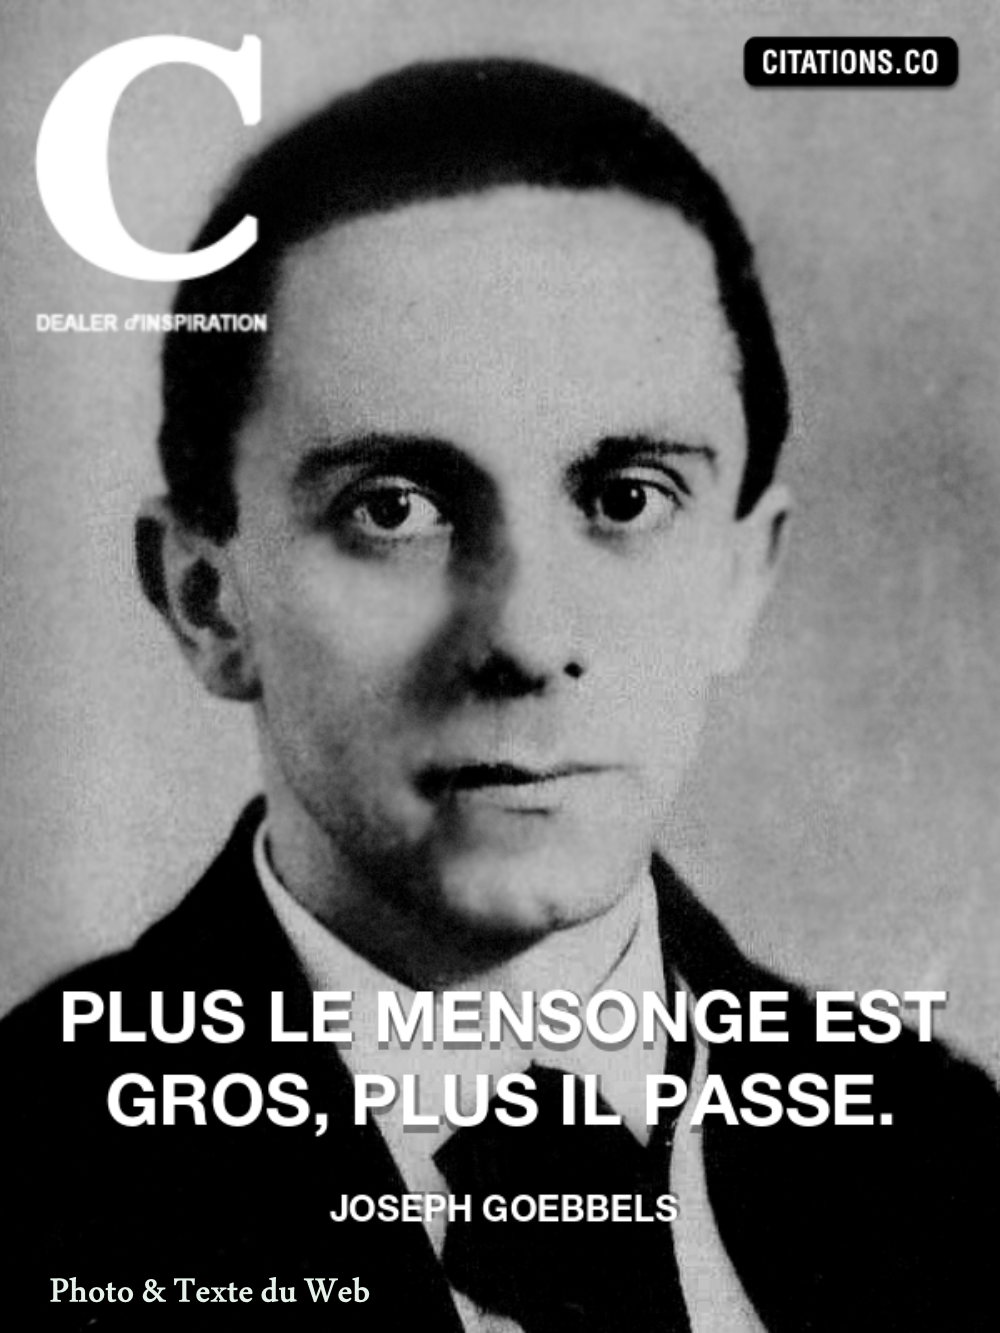 BE25. Politique - Citation de Joseph Goebbels